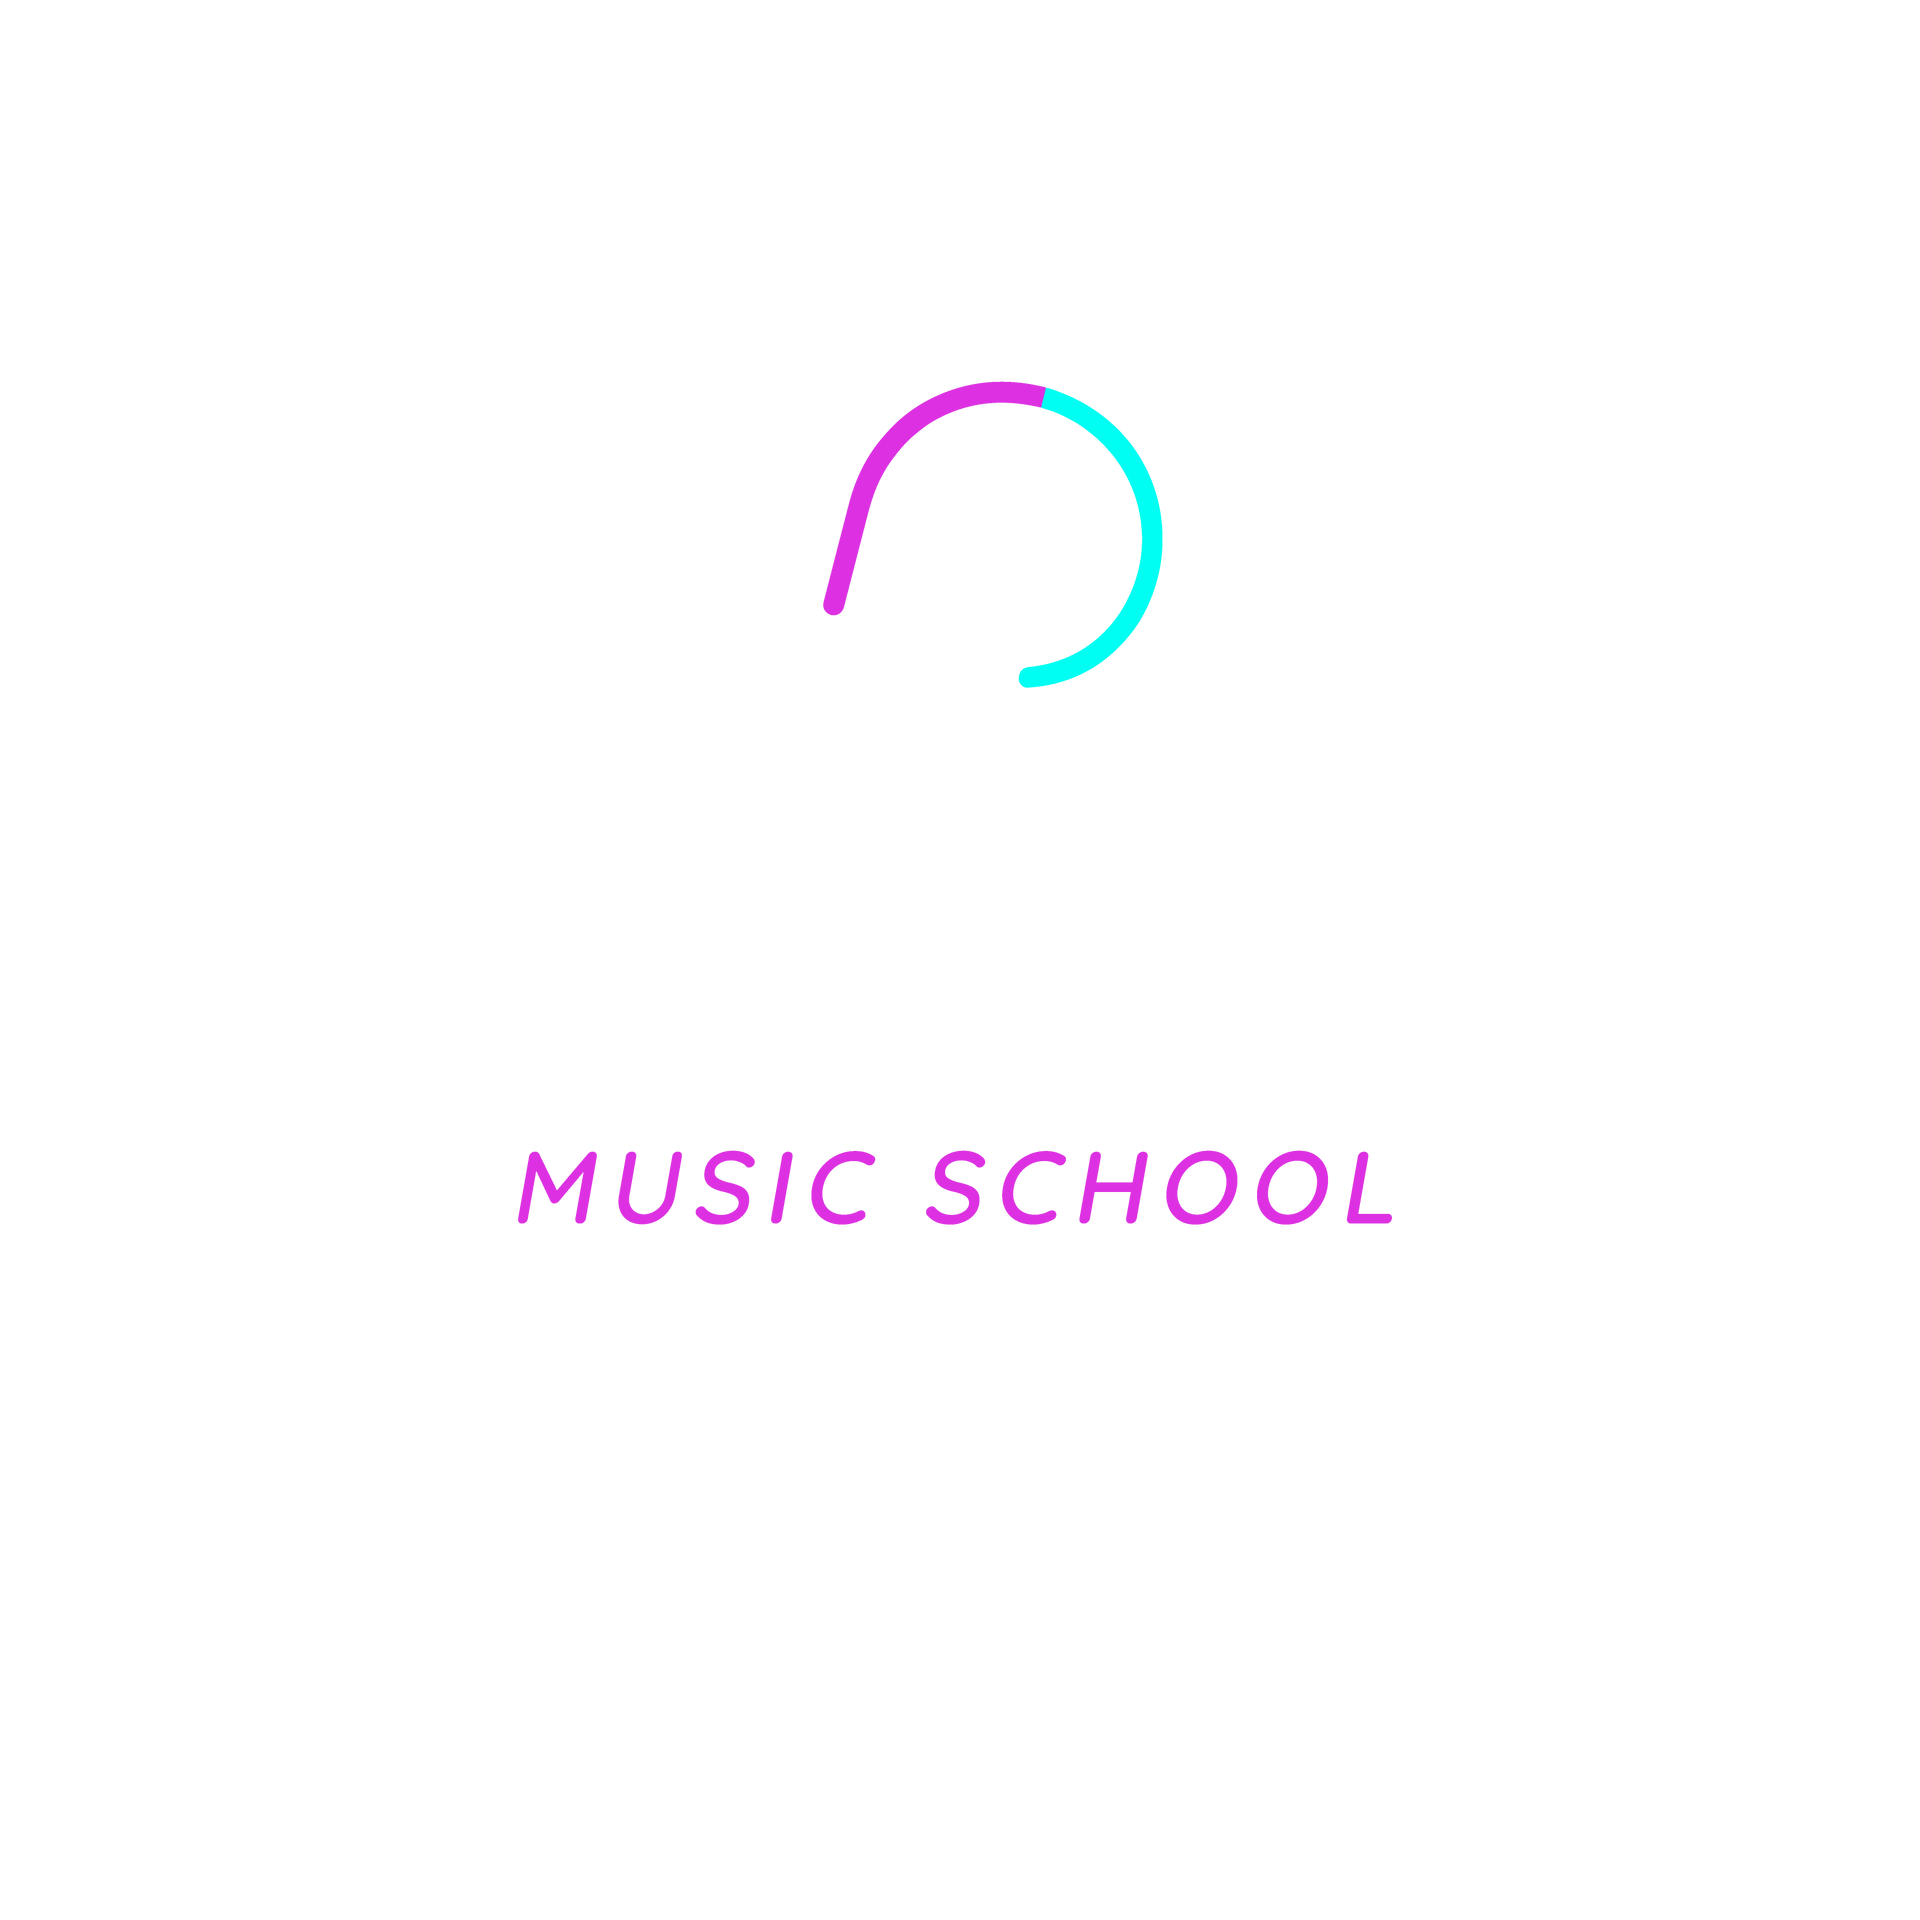 Patrick's Music School in Fresno